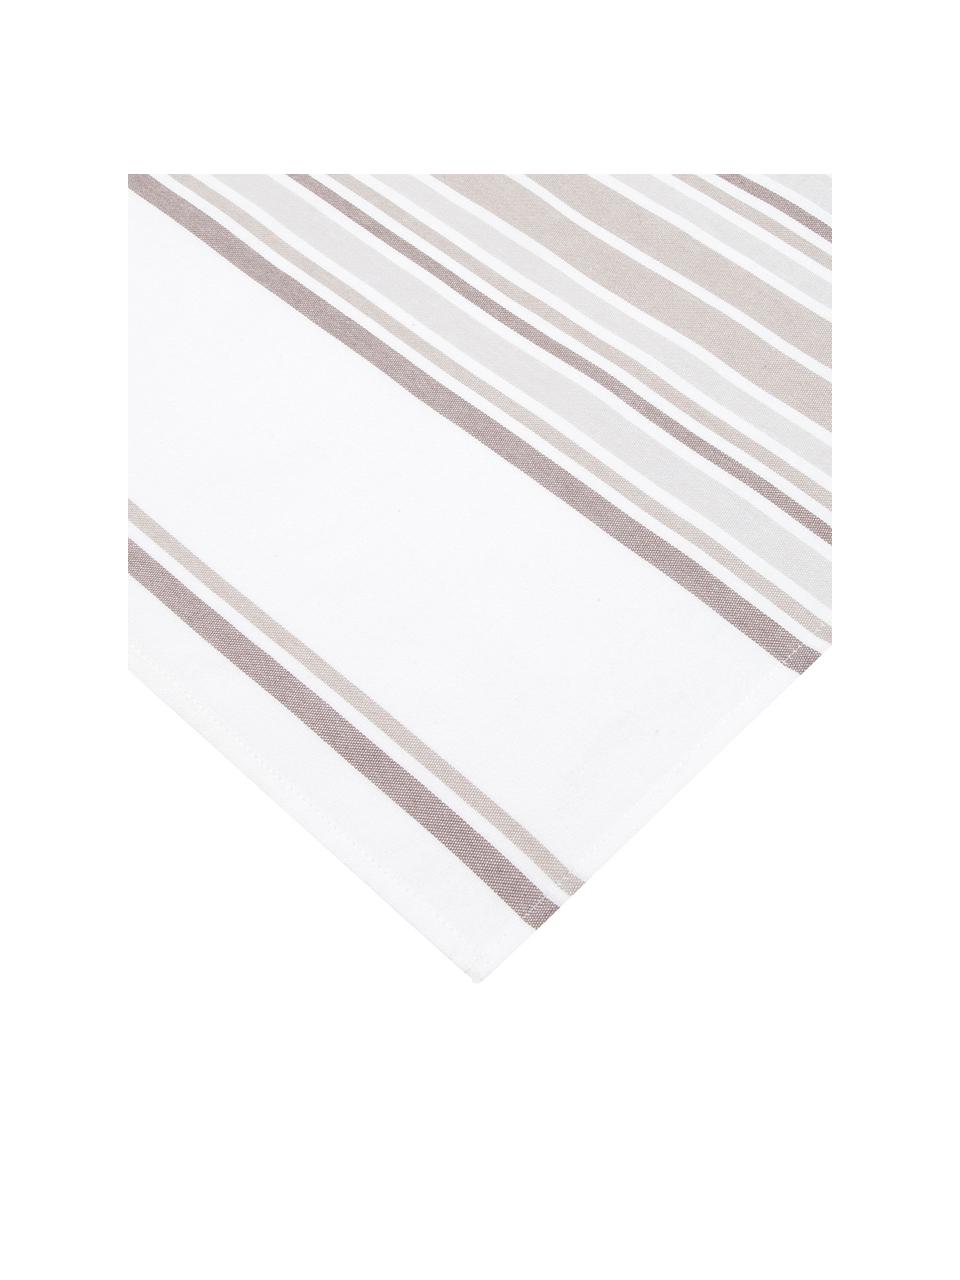 Serwetka z bawełny Katie, 2 szt., Bawełna, Biały, beżowy, S 50 x D 50 cm